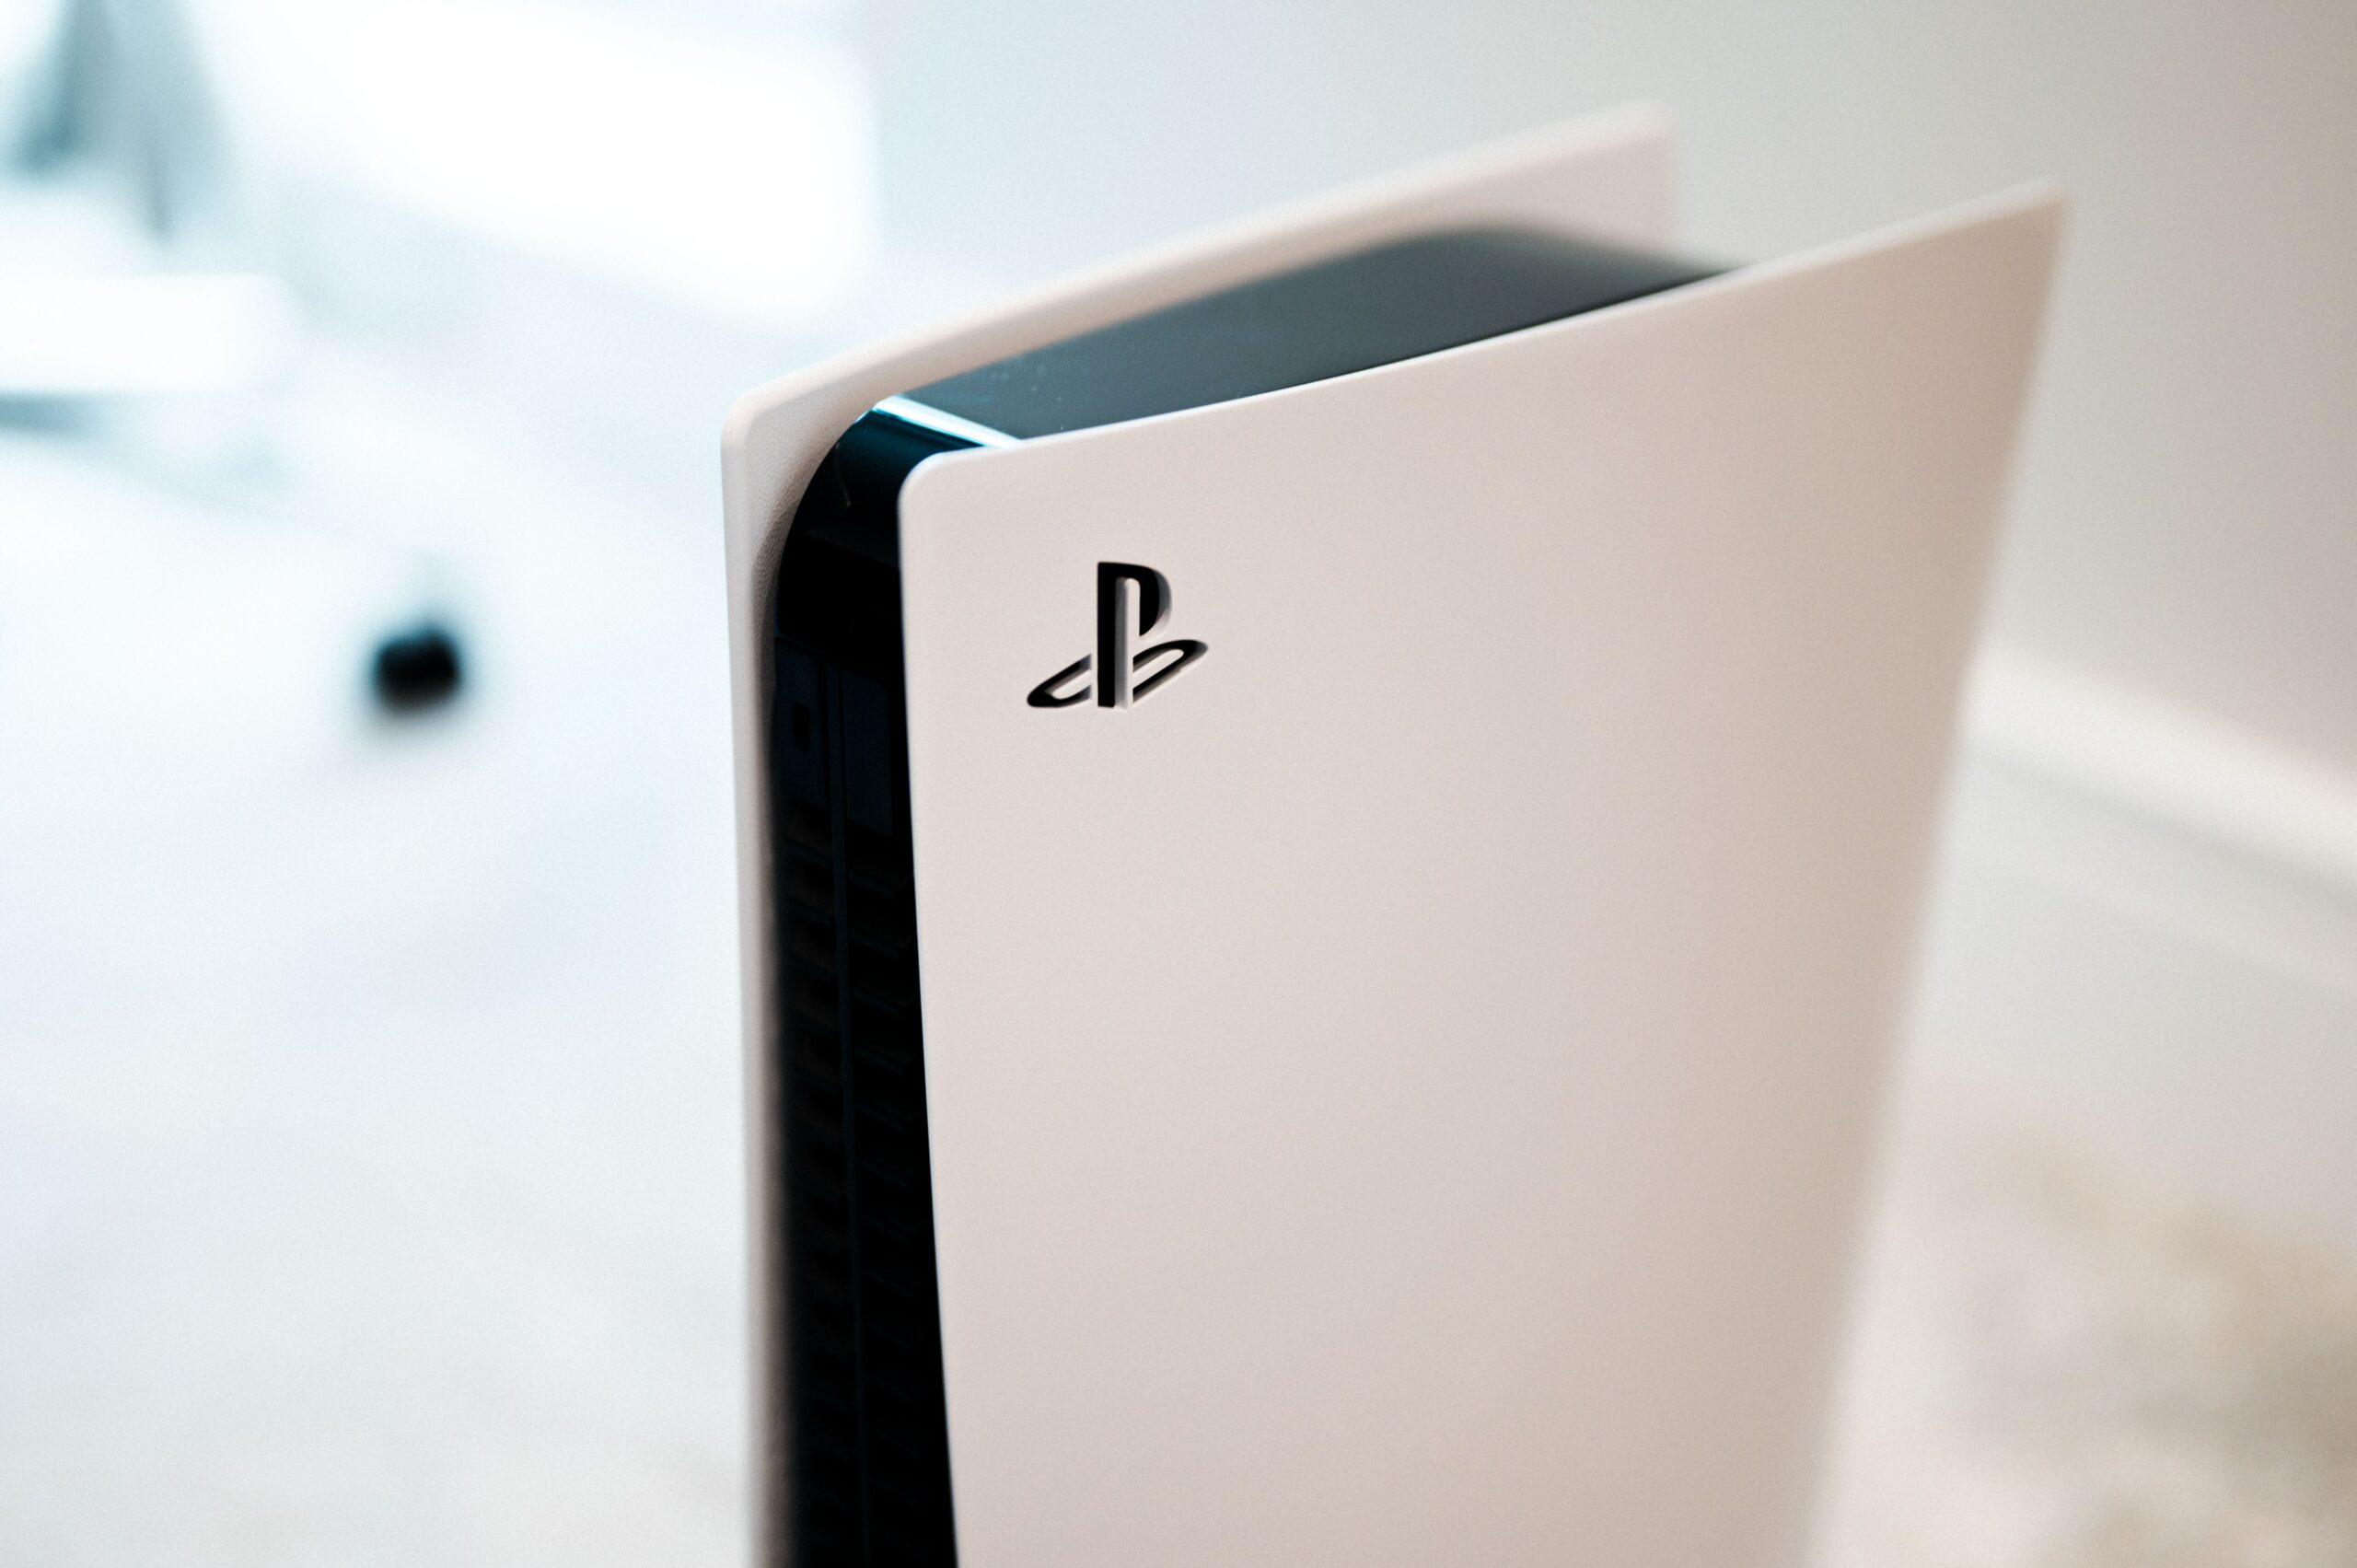 Sony apresenta hoje os novos jogos do PlayStation 5. Veja como assistir